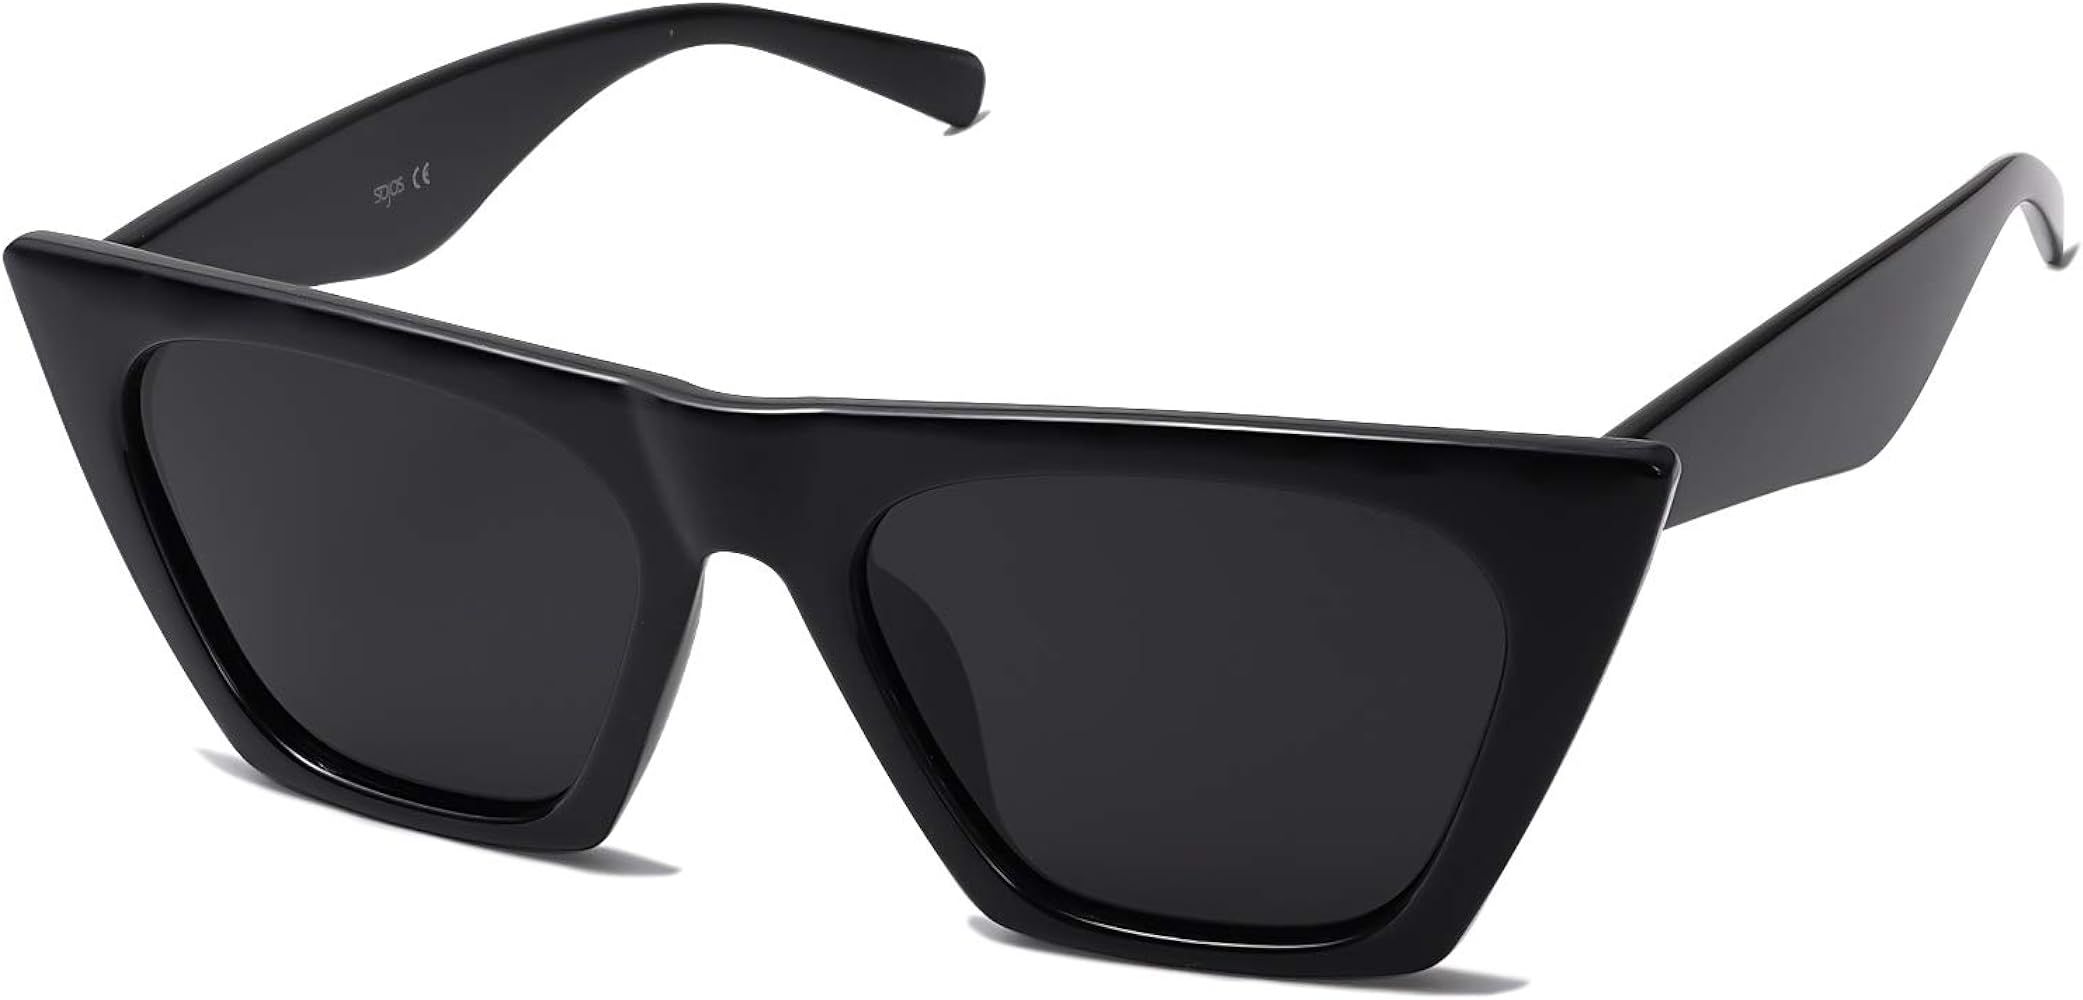 Retro Square Cateye Polarized Women Sunglasses Trendy Style BELLA SJ2115 | Amazon (US)